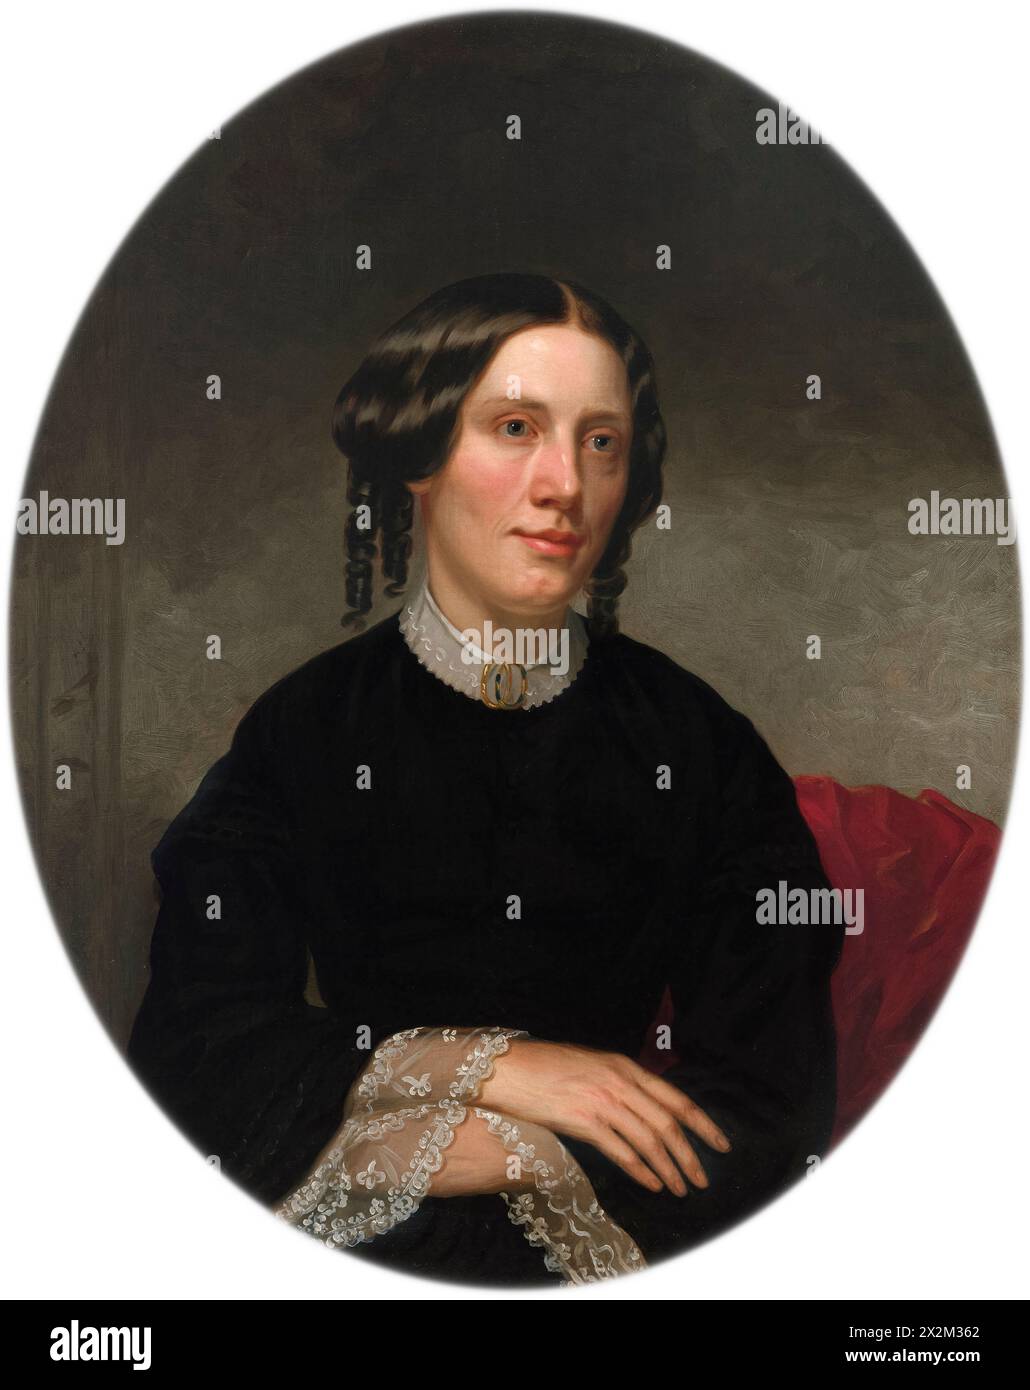 Ritratto di Harriet Beecher Stowe dell'artista americana Alanson Fisher (1807-1884) dipinto nel 1853. Questo ritratto è stato commissionato un anno dopo la pubblicazione del romanzo più venduto di Stowe 'la capanna dello zio Tom' che ha fatto molto per progredire la causa abolizionista negli anni '1850 Foto Stock